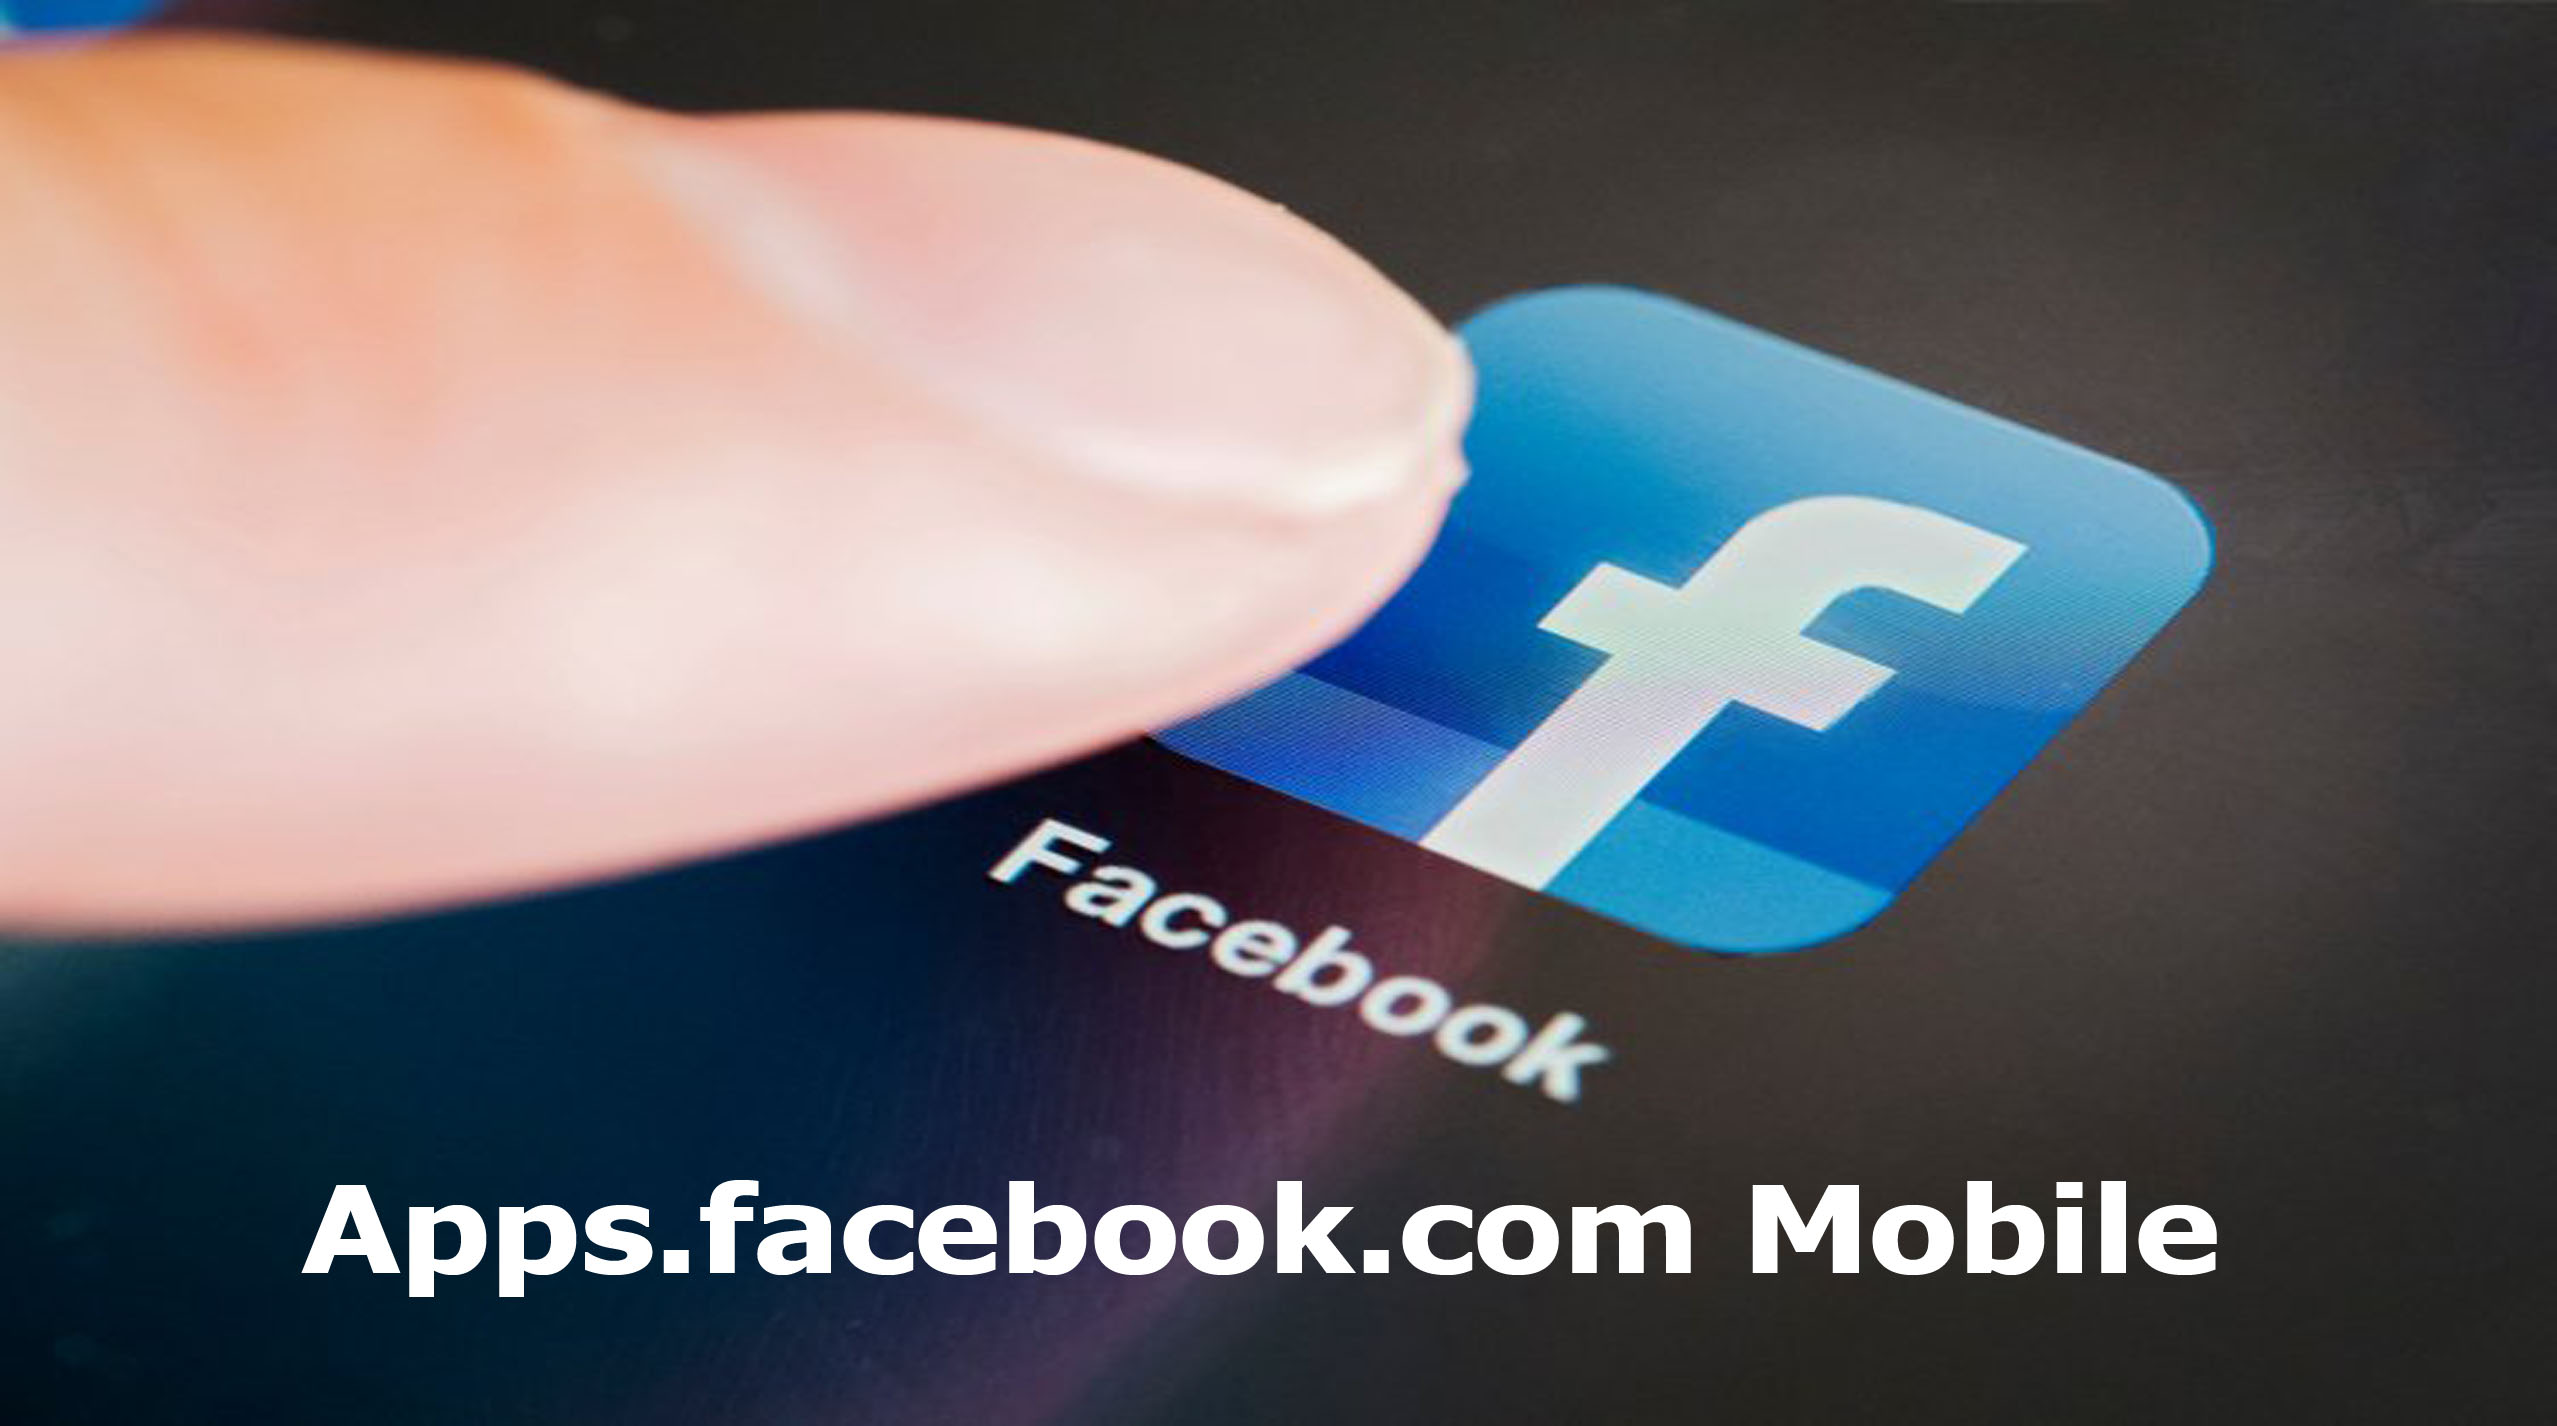 Apps.facebook.com Mobile - Download Facebook Apps for Free